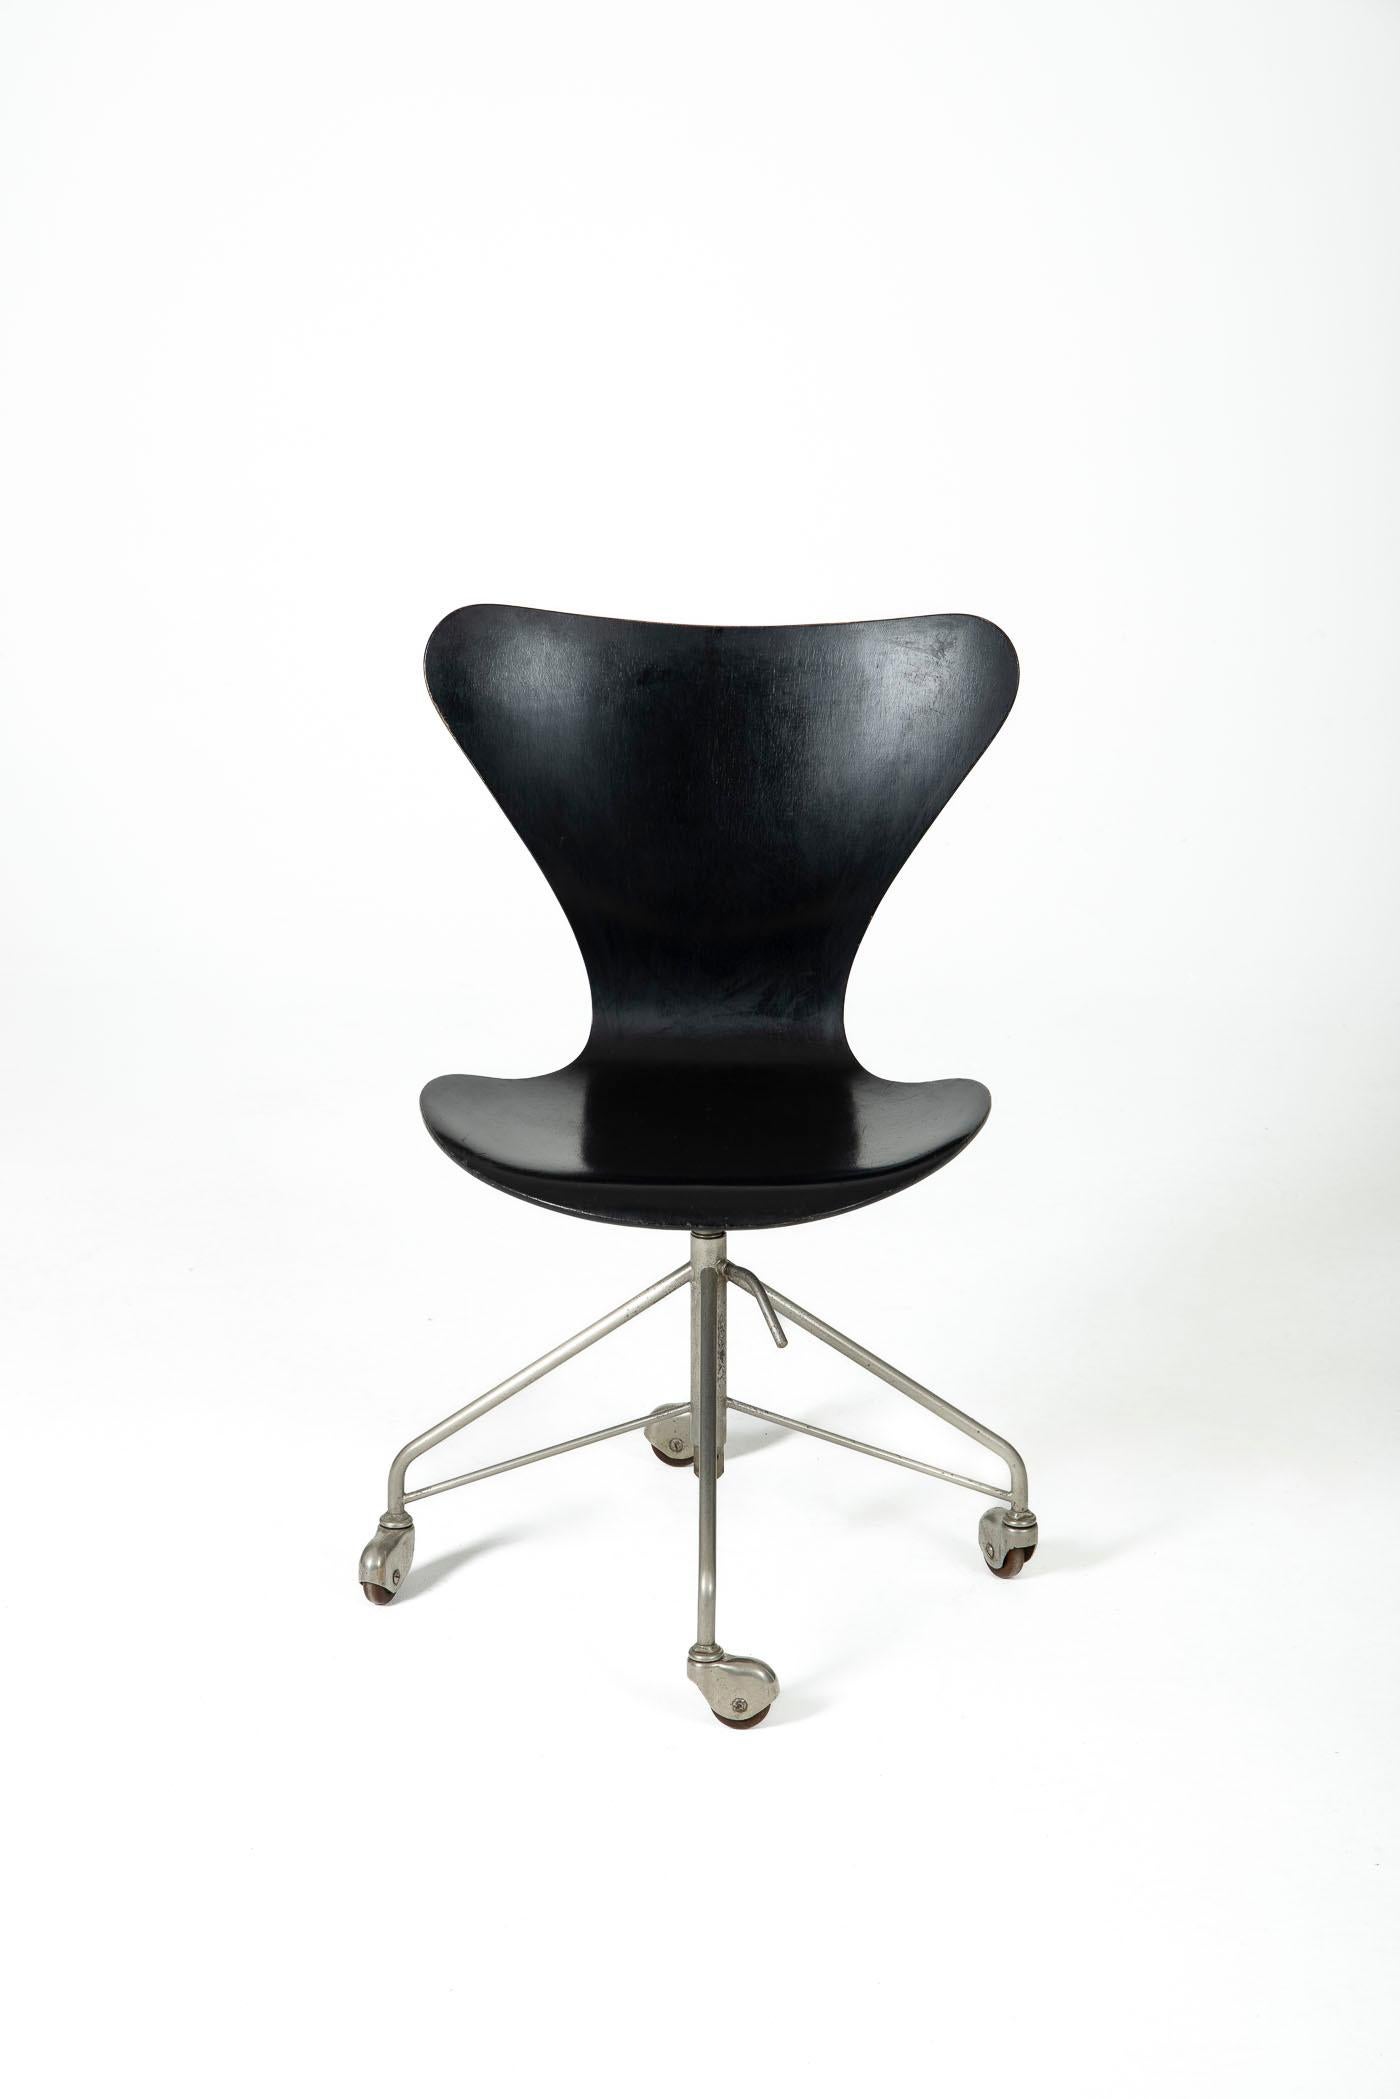 Bürostuhl, Modell 3117. Es ist Teil der ersten 5 Ausgaben, einzigartiger Stuhl der Collection'S.
Entworfen von Arne Jacobsen für Fritz Hansen. Die Sitzhöhe ist einstellbar. Zeigt leichte Gebrauchsspuren, ist aber in gutem Zustand.